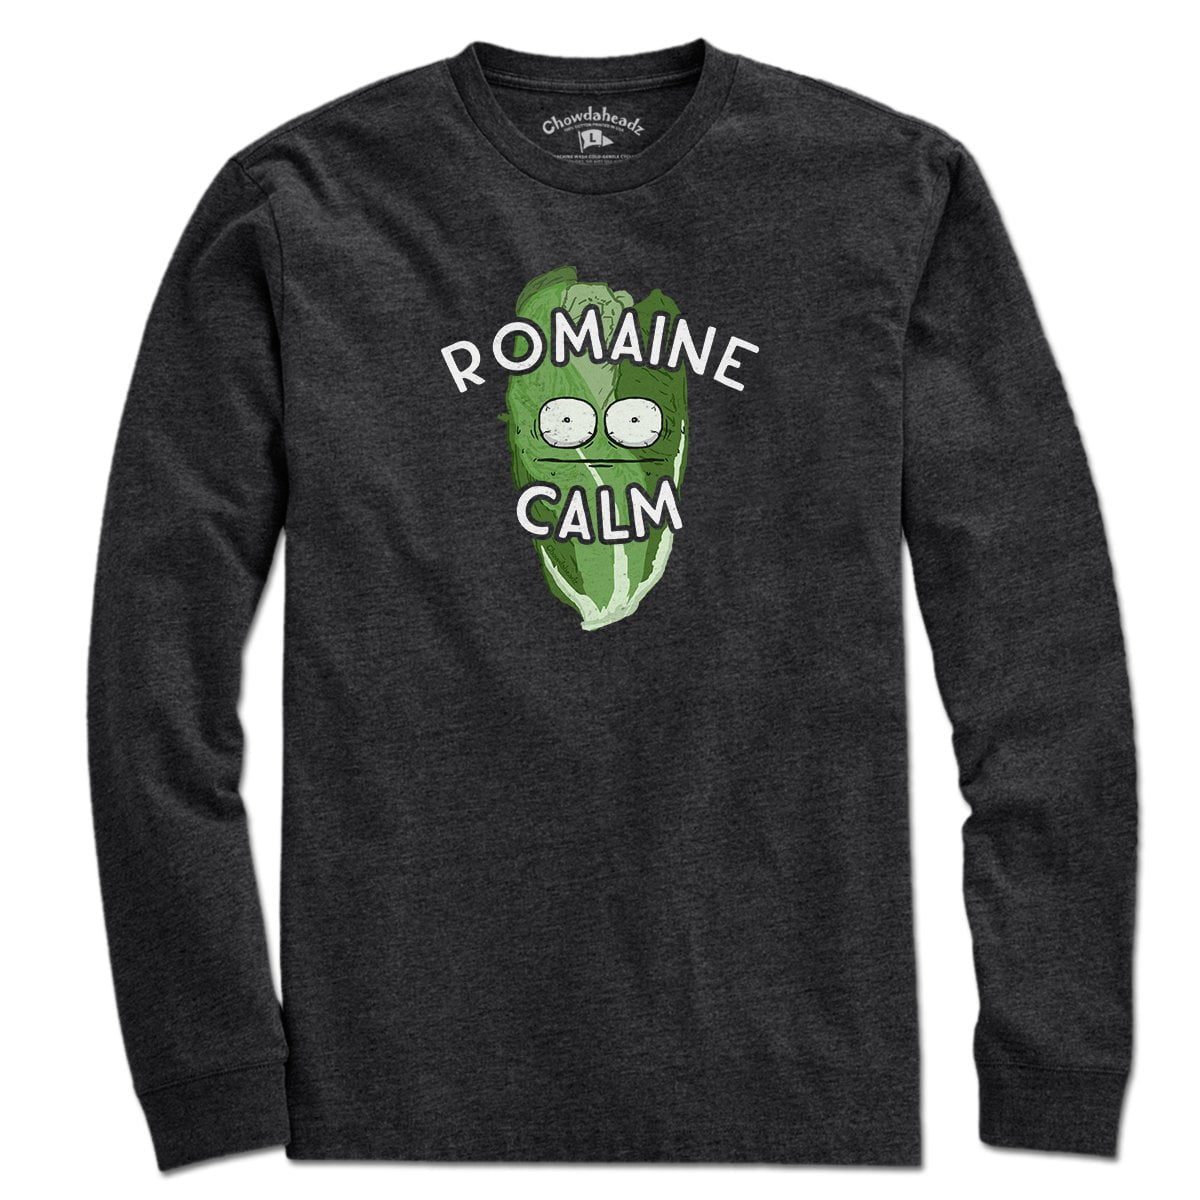 Romaine Calm T-Shirt - Chowdaheadz